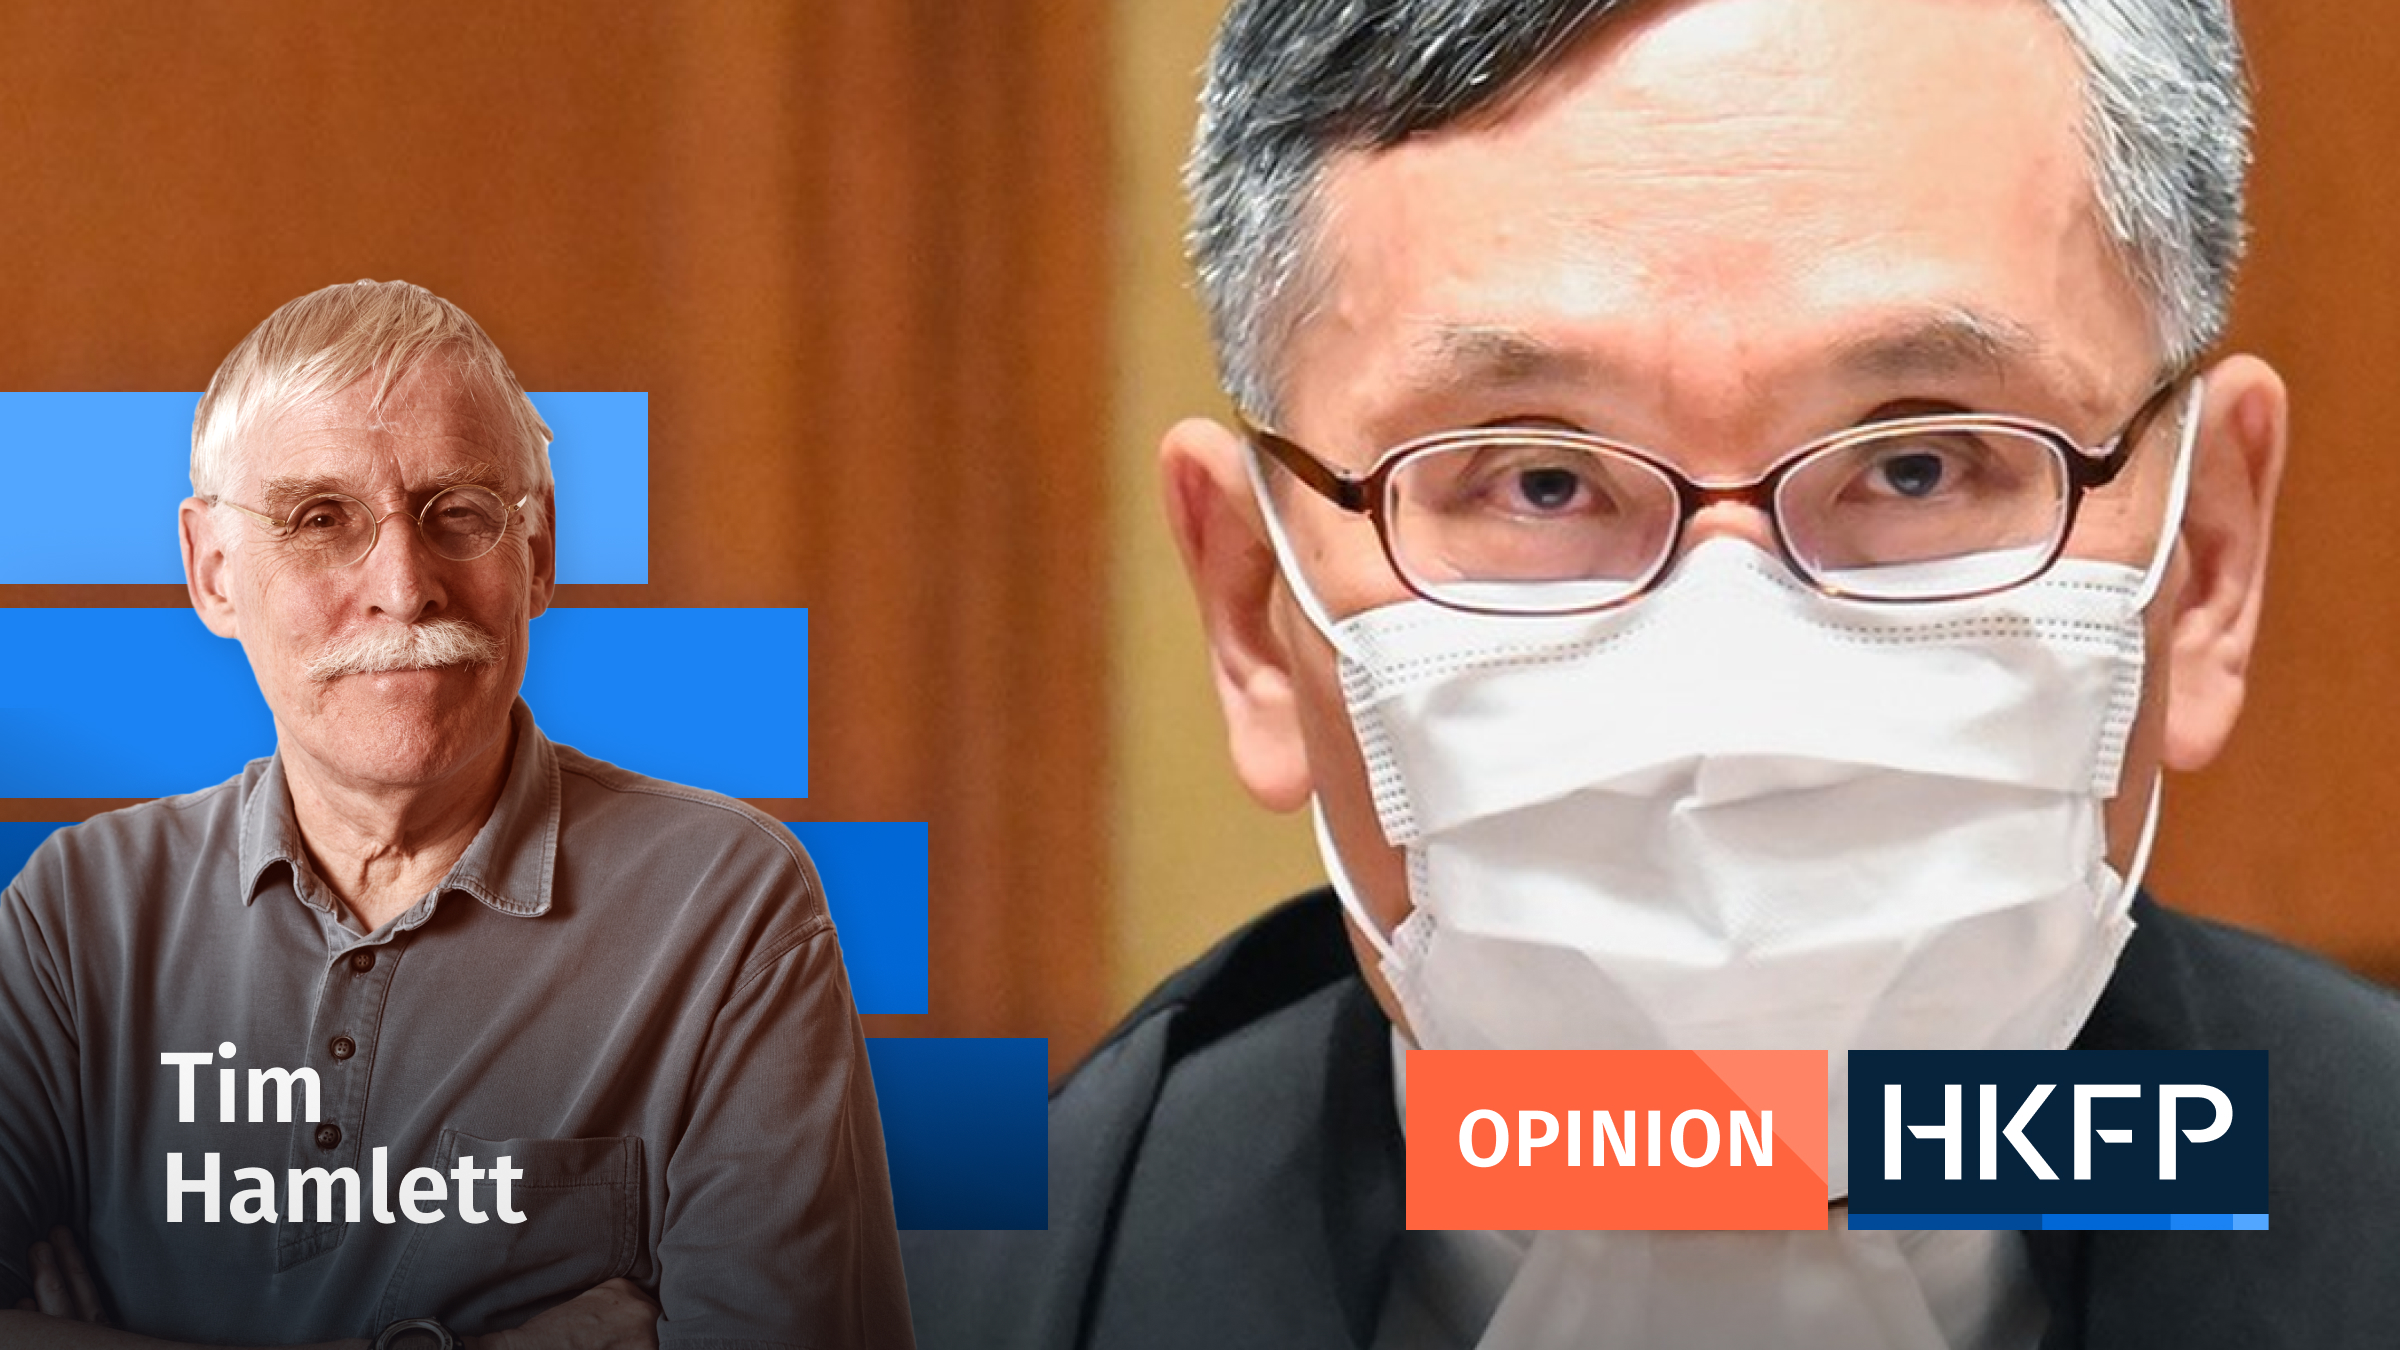 Does Hong Kong still have judicial independence?